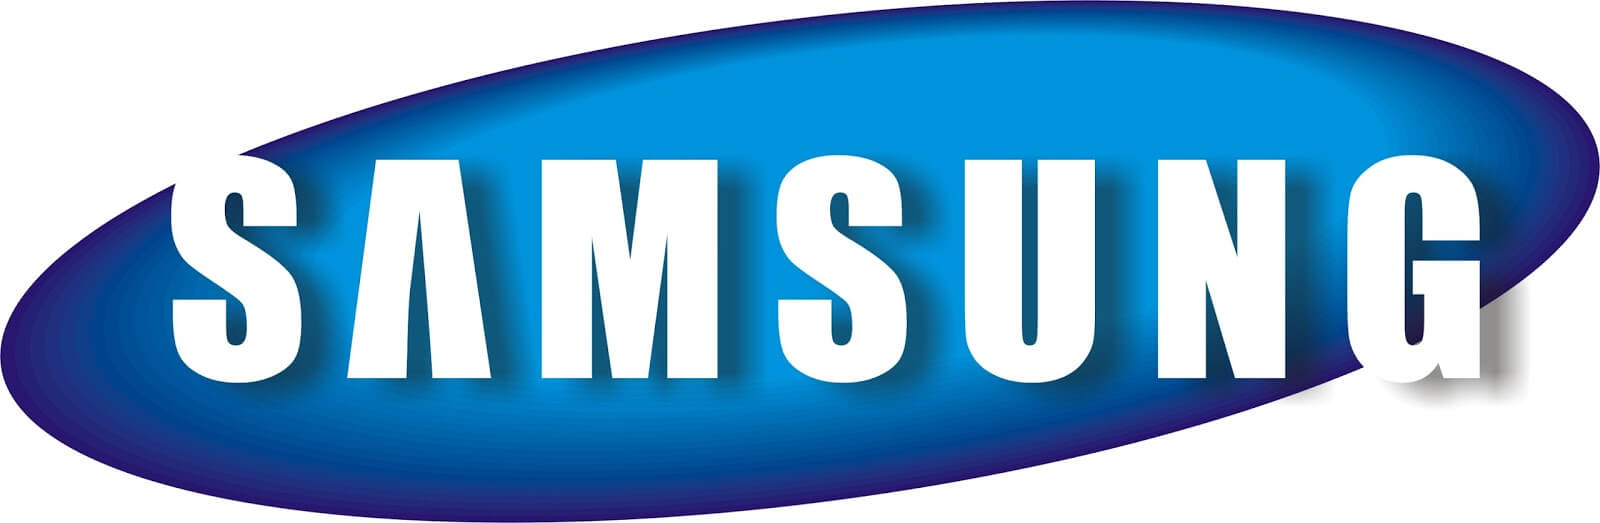 Samsung Galaxy J4 Core format atma nasıl yapılır